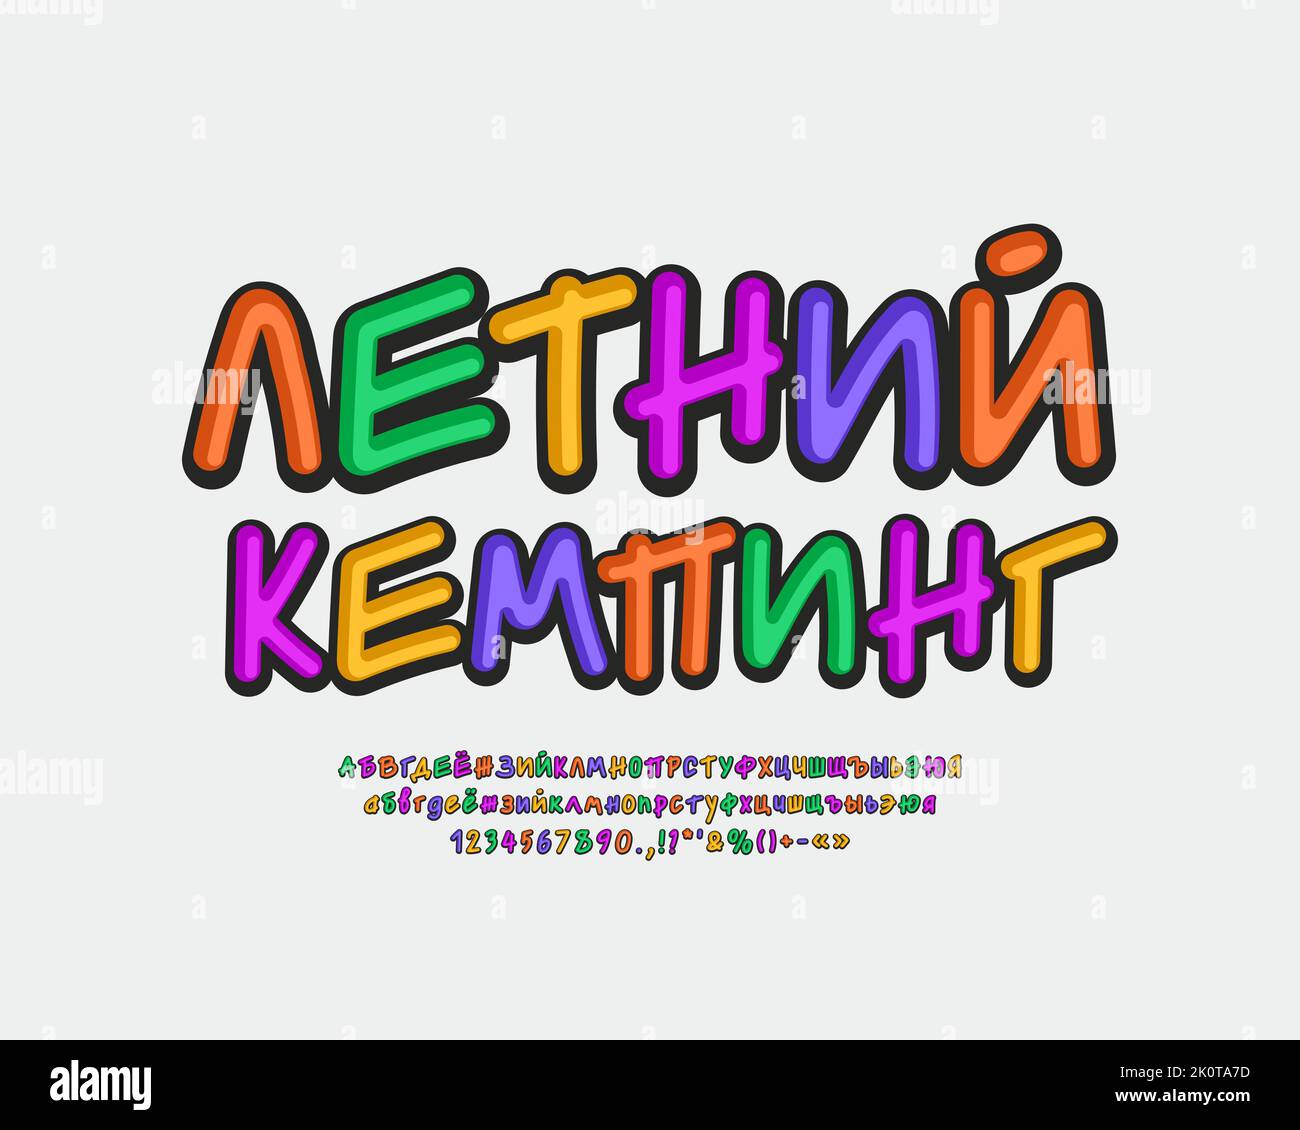 Bright poster Summer Camping con letras multicolor y conjunto de fuentes cirílicas rusas vectoriales. Traducción de la lengua rusa - Verano Camping Ilustración del Vector